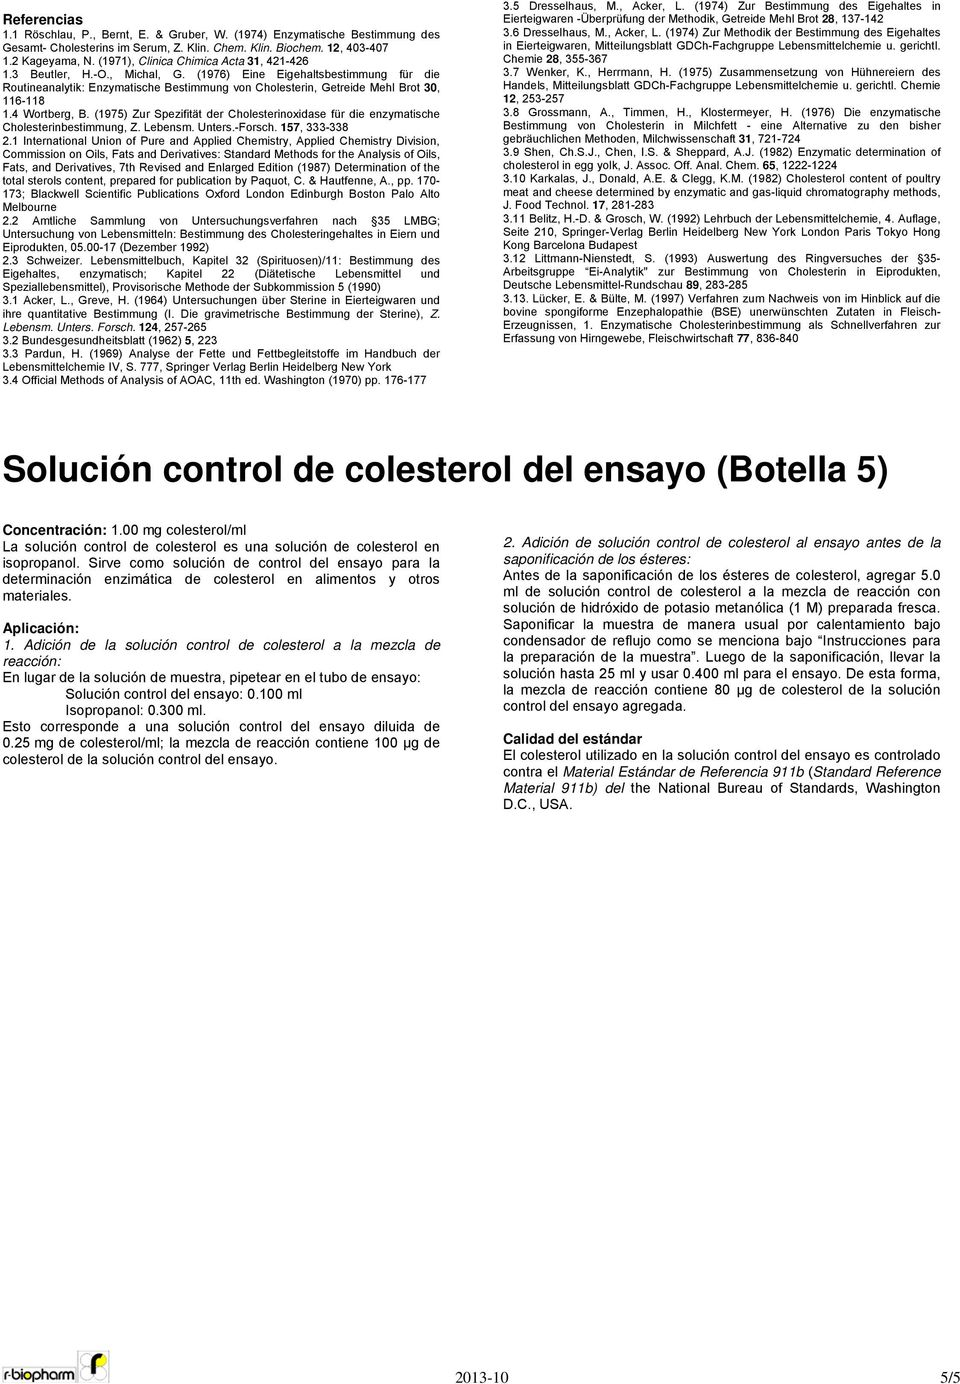 (1976) Eine Eigehaltsbestimmung für die Routineanalytik: Enzymatische Bestimmung von Cholesterin, Getreide Mehl Brot 30, 116-118 1.4 Wortberg, B.